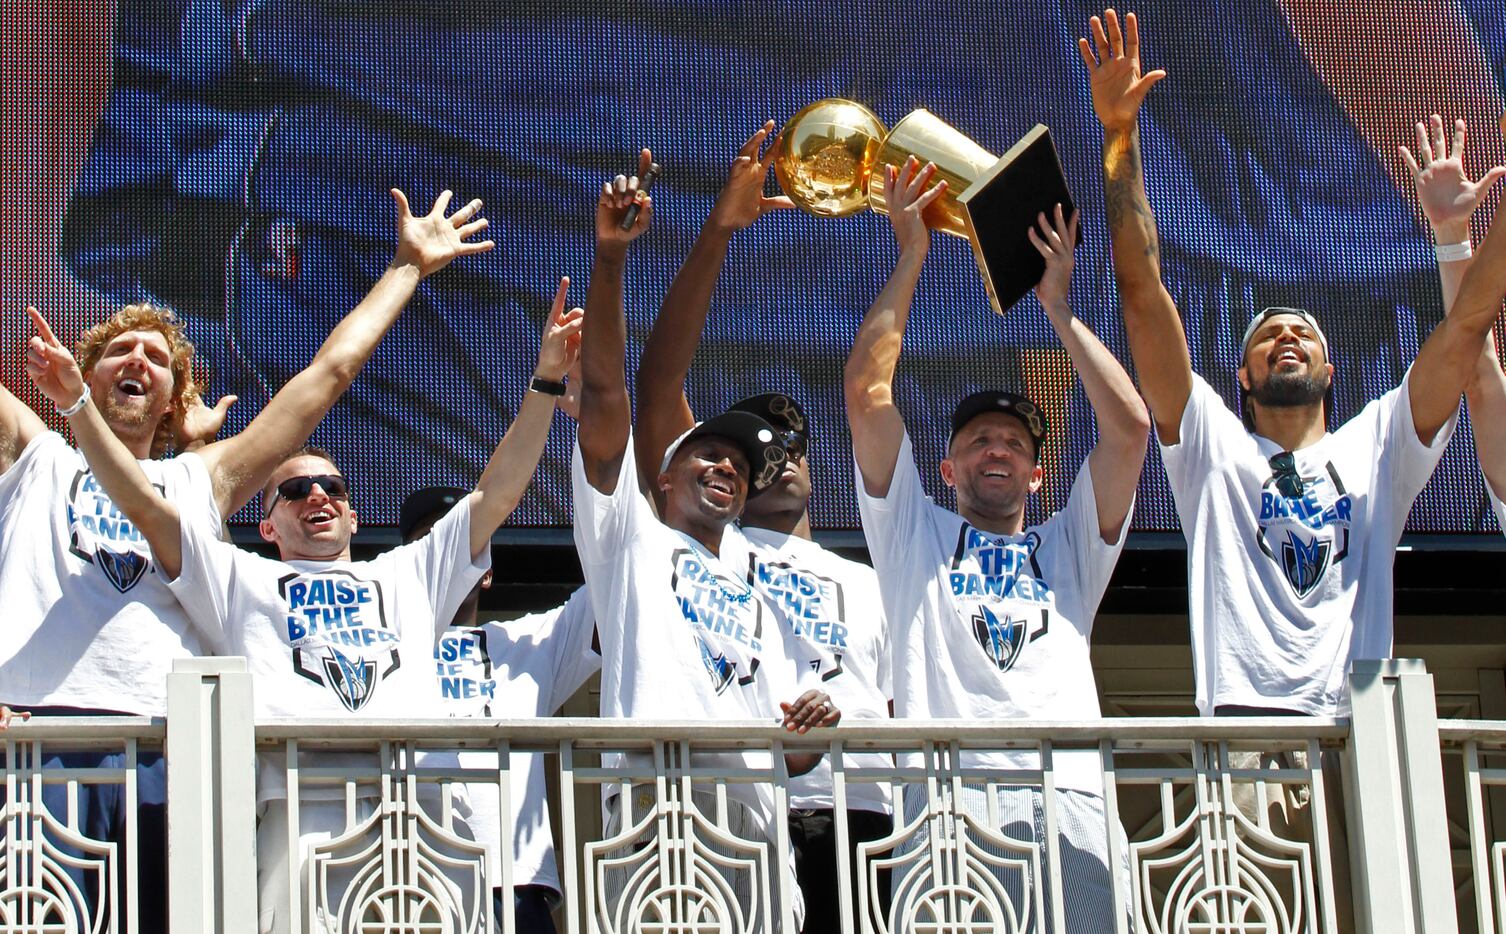 SPORTS / DEPORTES: Dallas MAVS are the 2011 NBA Champions!